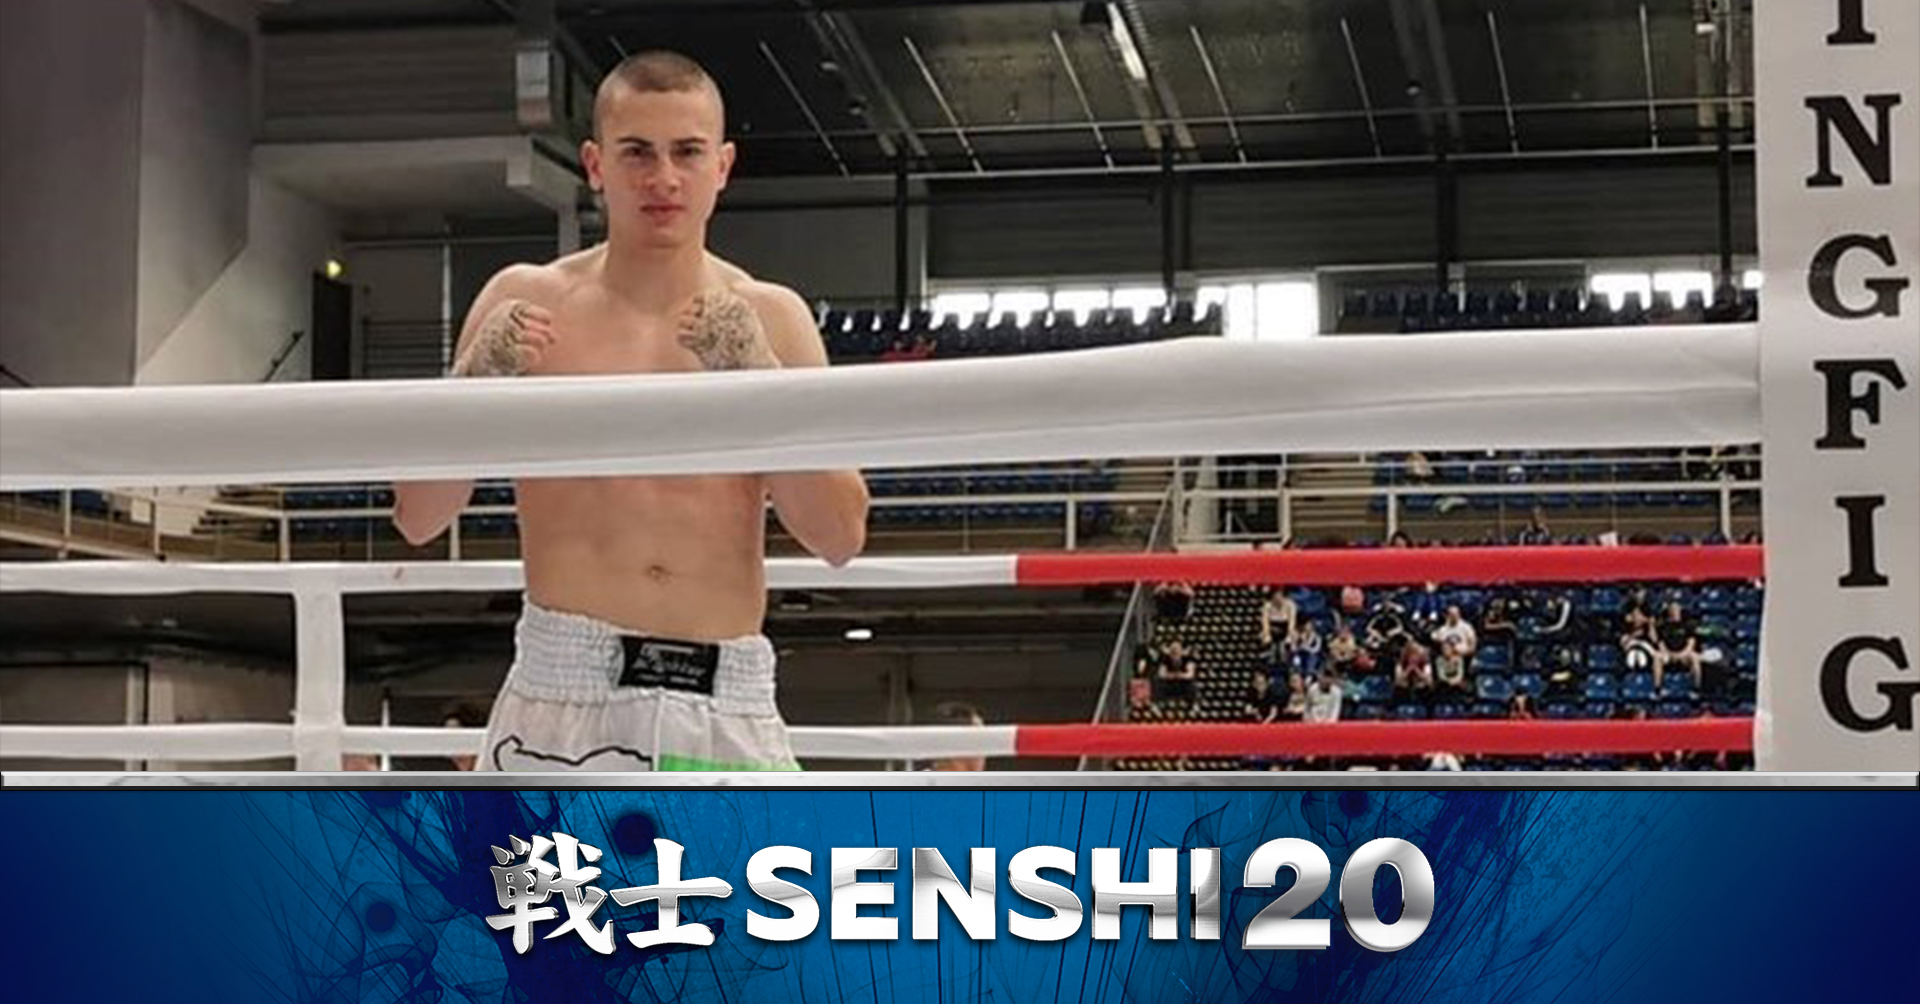 Огнян Мирчев: За победата на SENSHI 20 ще разчитам на упоритост и бърза мисъл